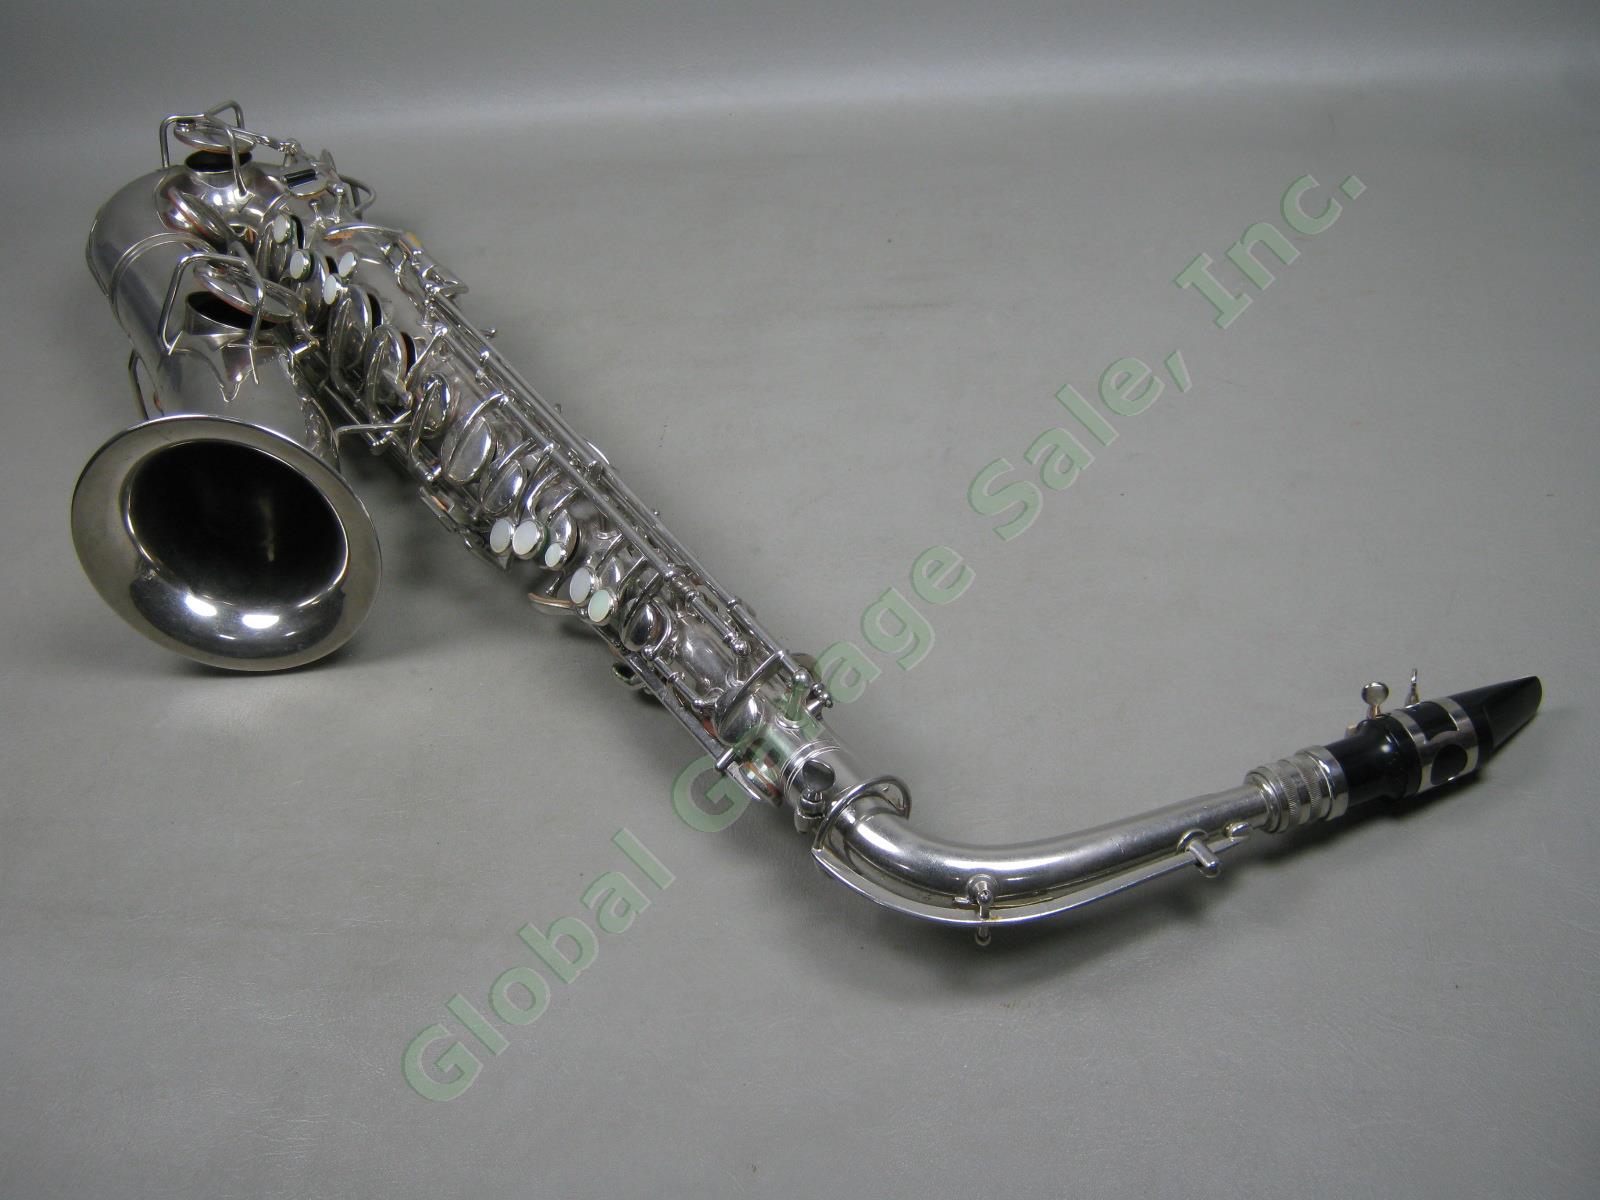 Vtg Antique C G CG Conn C-Melody Saxophone + Case 1119954 106159 L Patented 1914 4